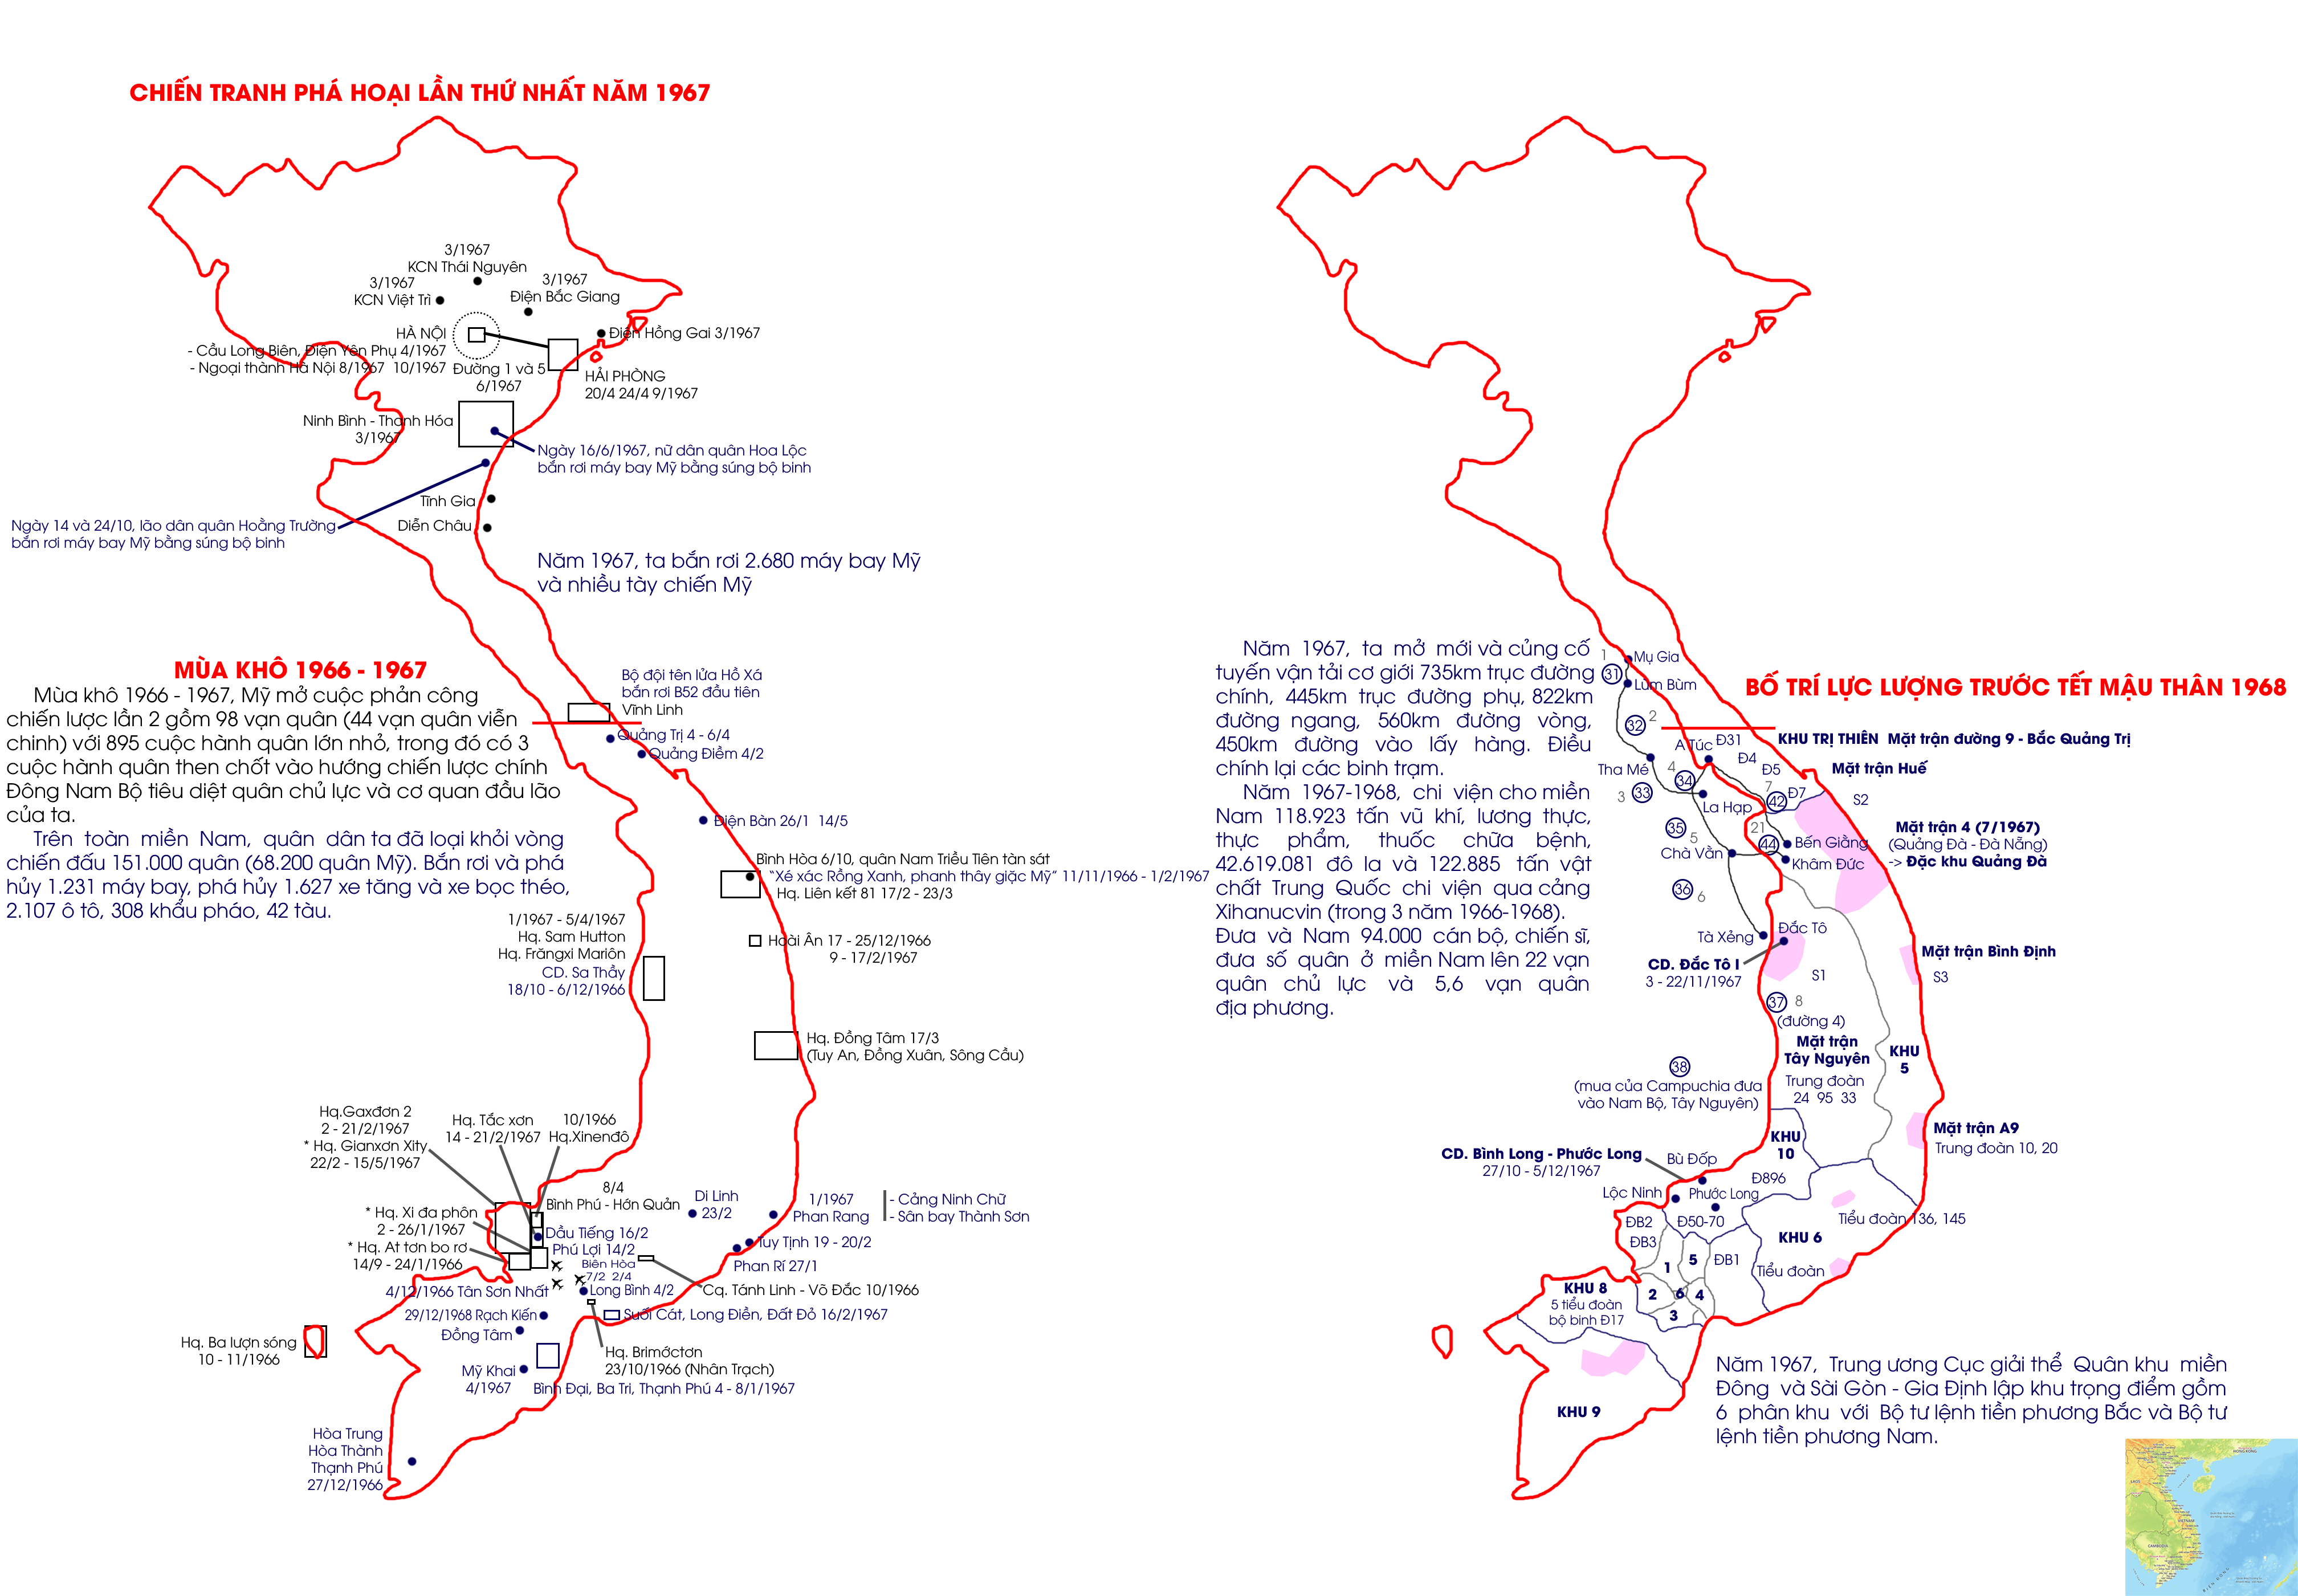 Chiến sự mùa khô II 1966-1967 và hè thu 1967